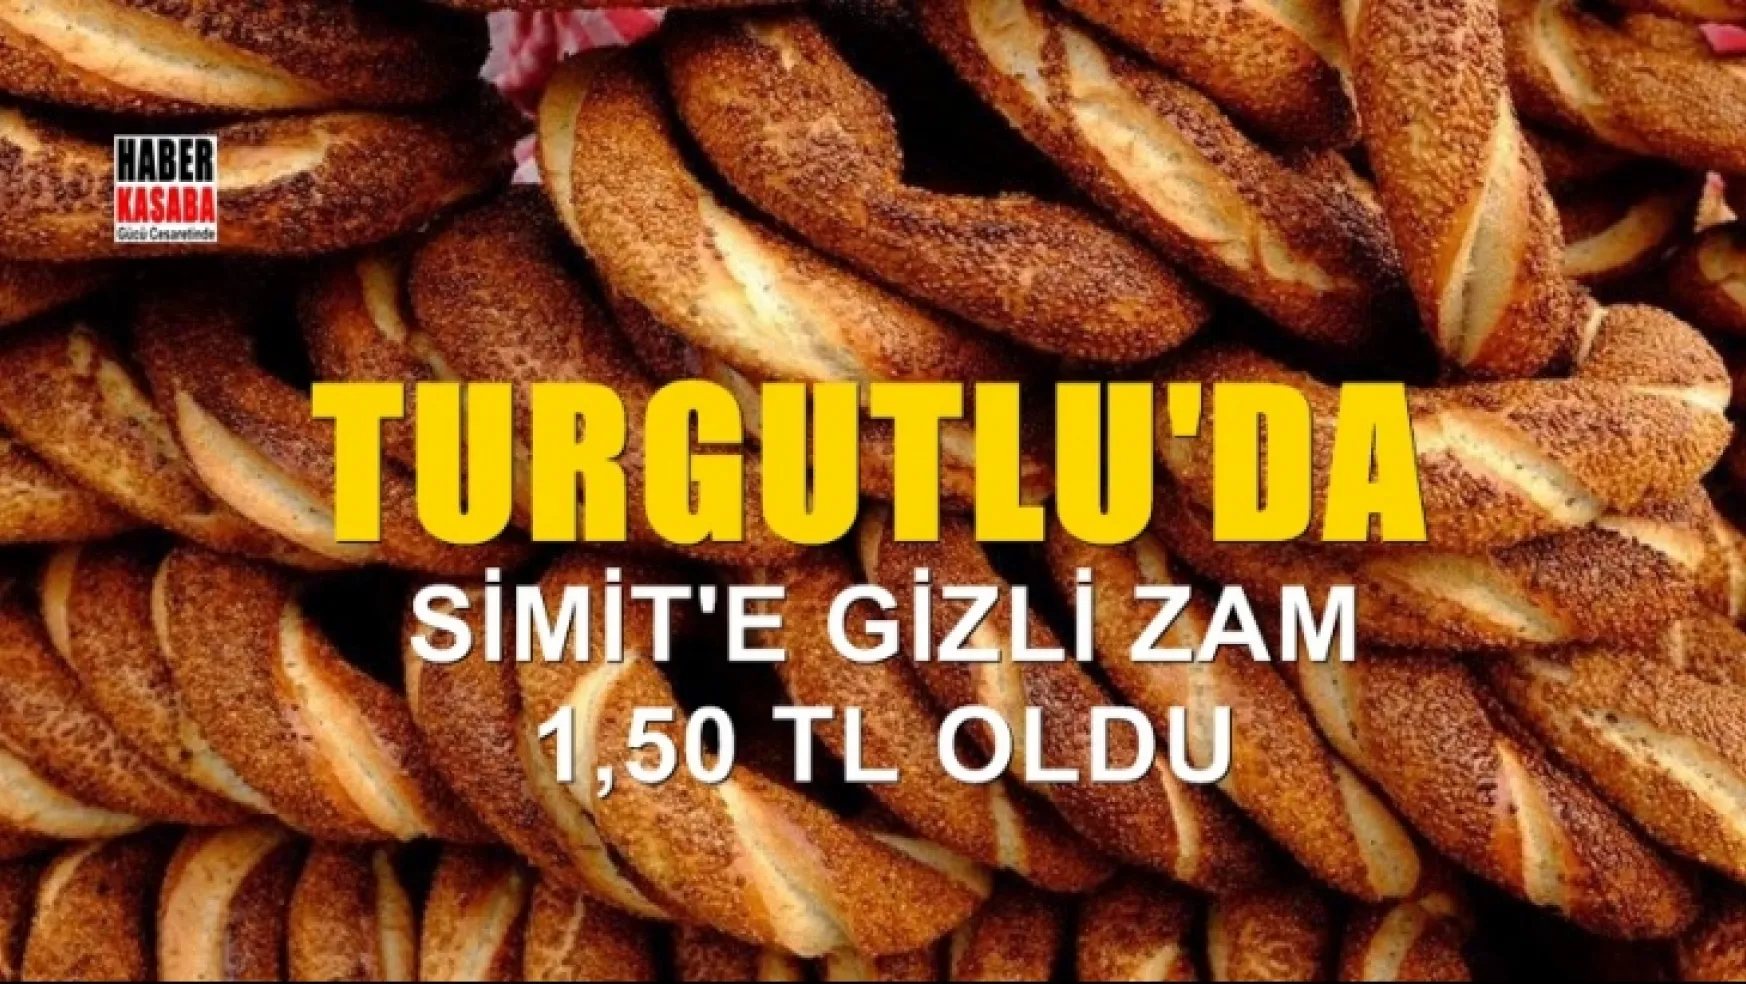 Turgutlu'da simit fiyatına 25 kuruş daha zam geldi!